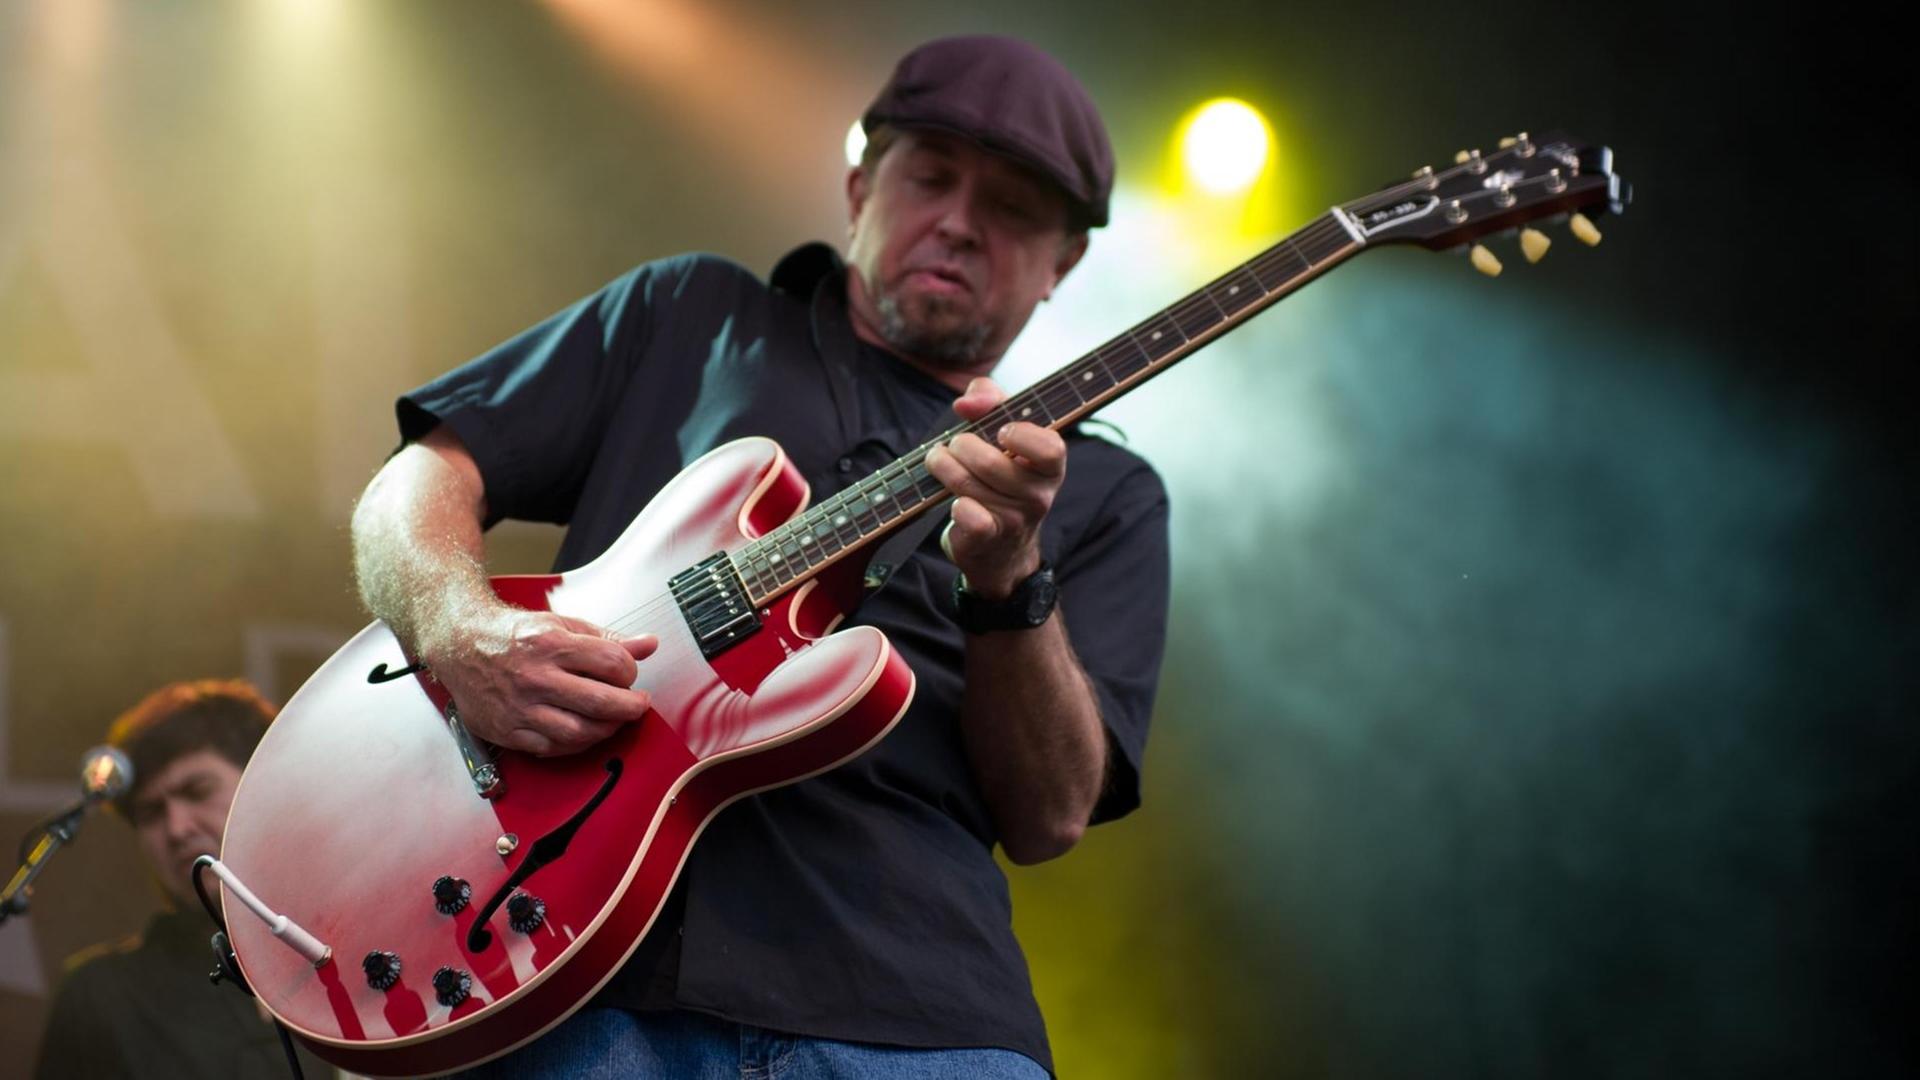 Ein Mann mit Kappe steht auf einer Bühne und spielt eine rote Gitarre.